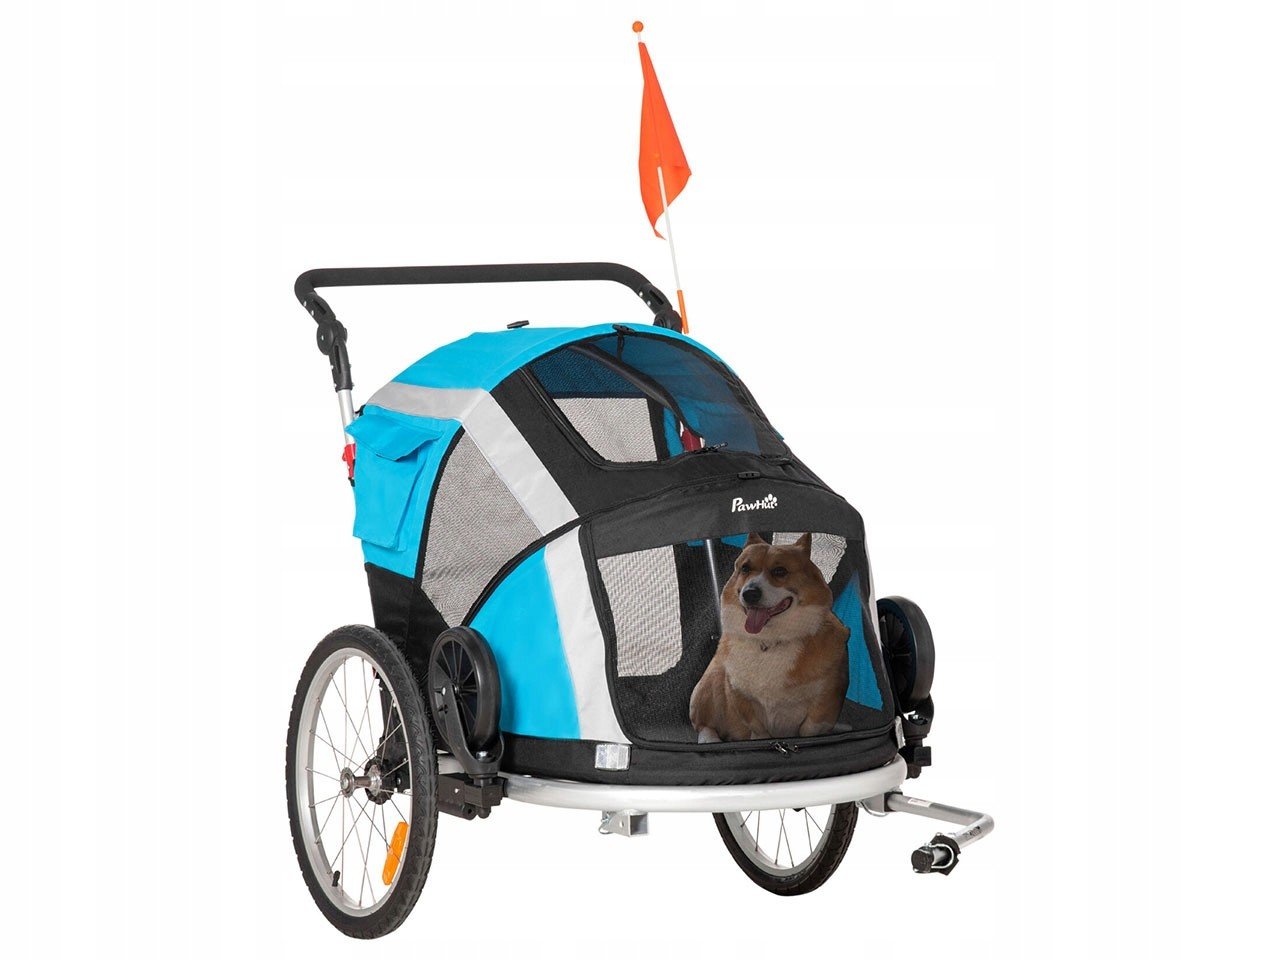 Cyklistický vozík pro psa Pawhut D00-142LB, 2v1, přívěs pro psa, skládací,